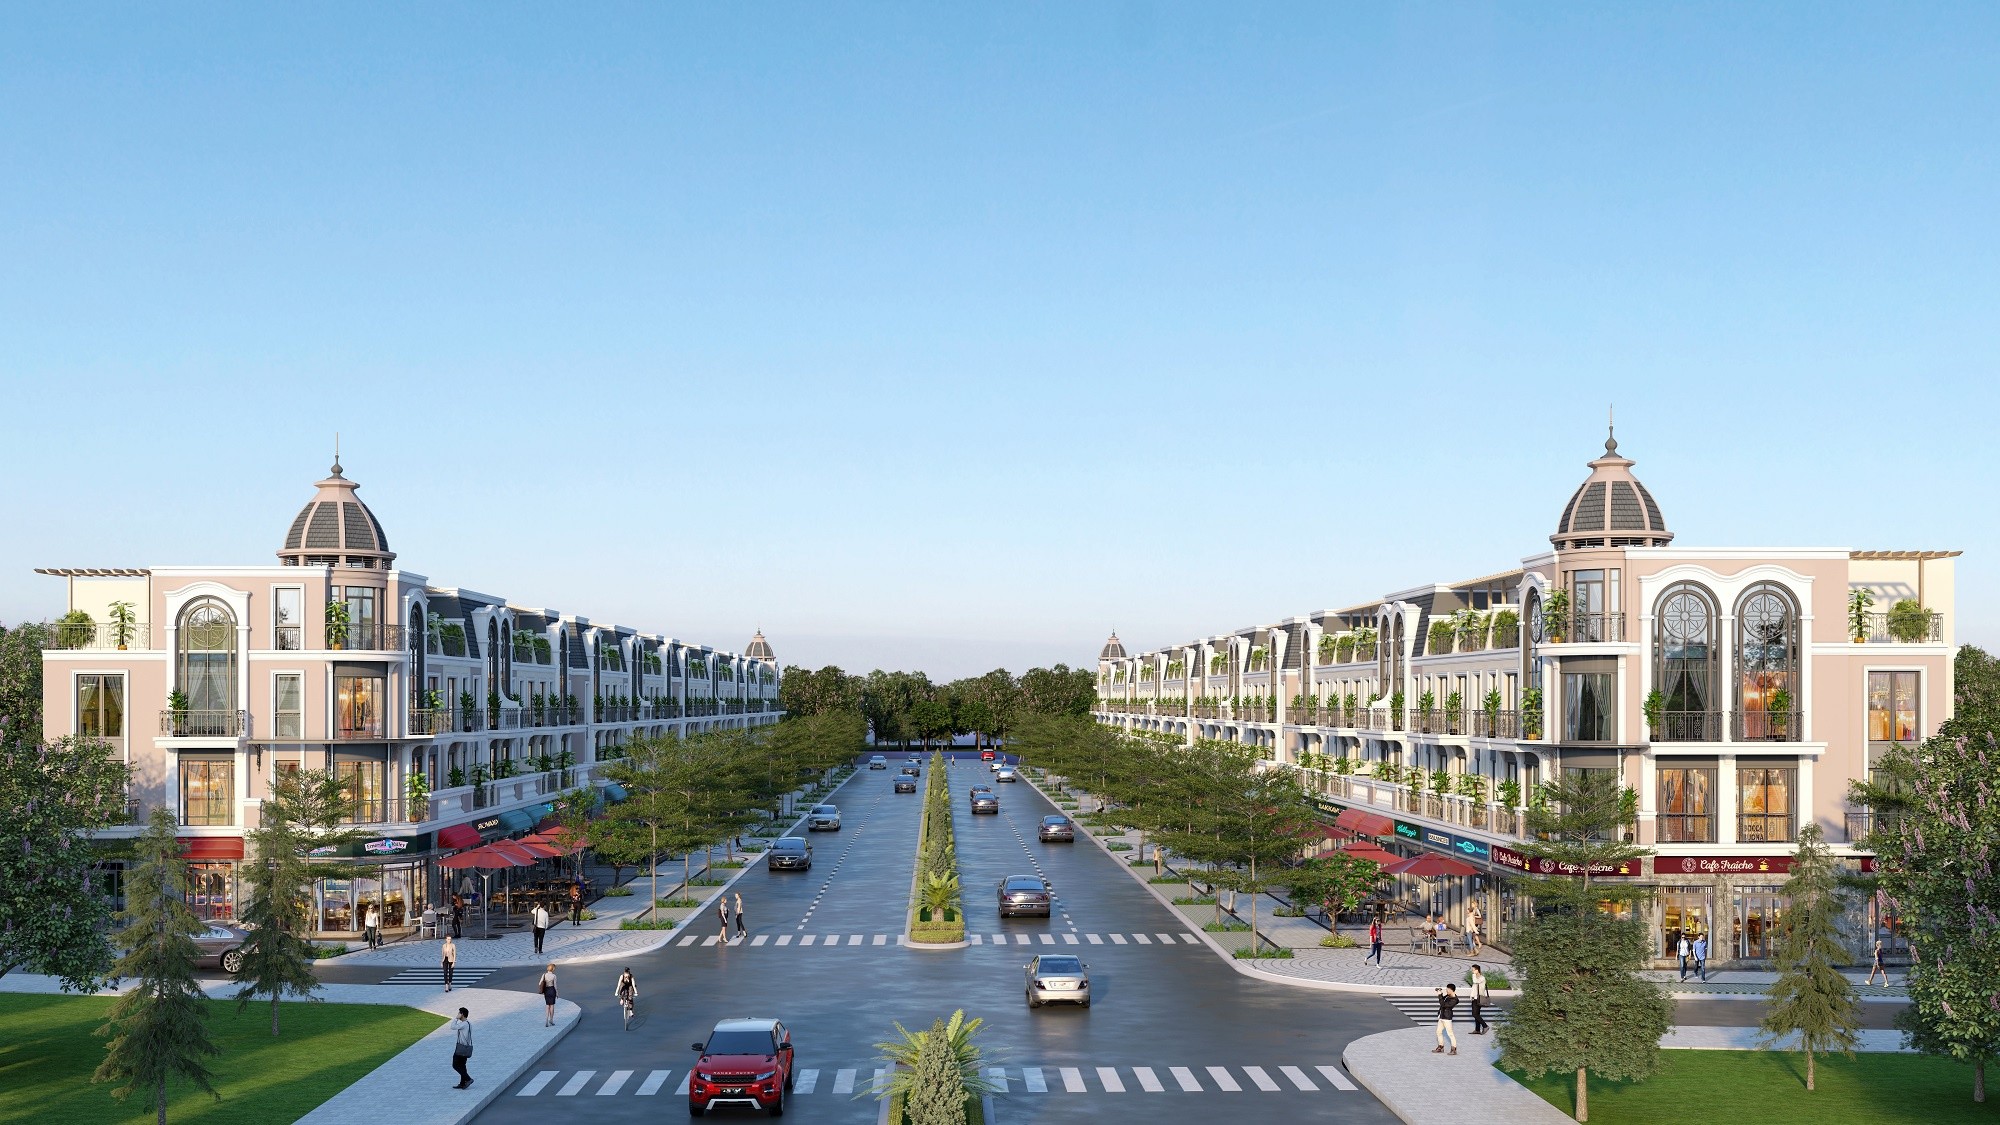 
Đại lộ thương mại trung tâm Imperia Grand Plaza Đức Hòa (huyện Đức Hòa, tỉnh Long An)
